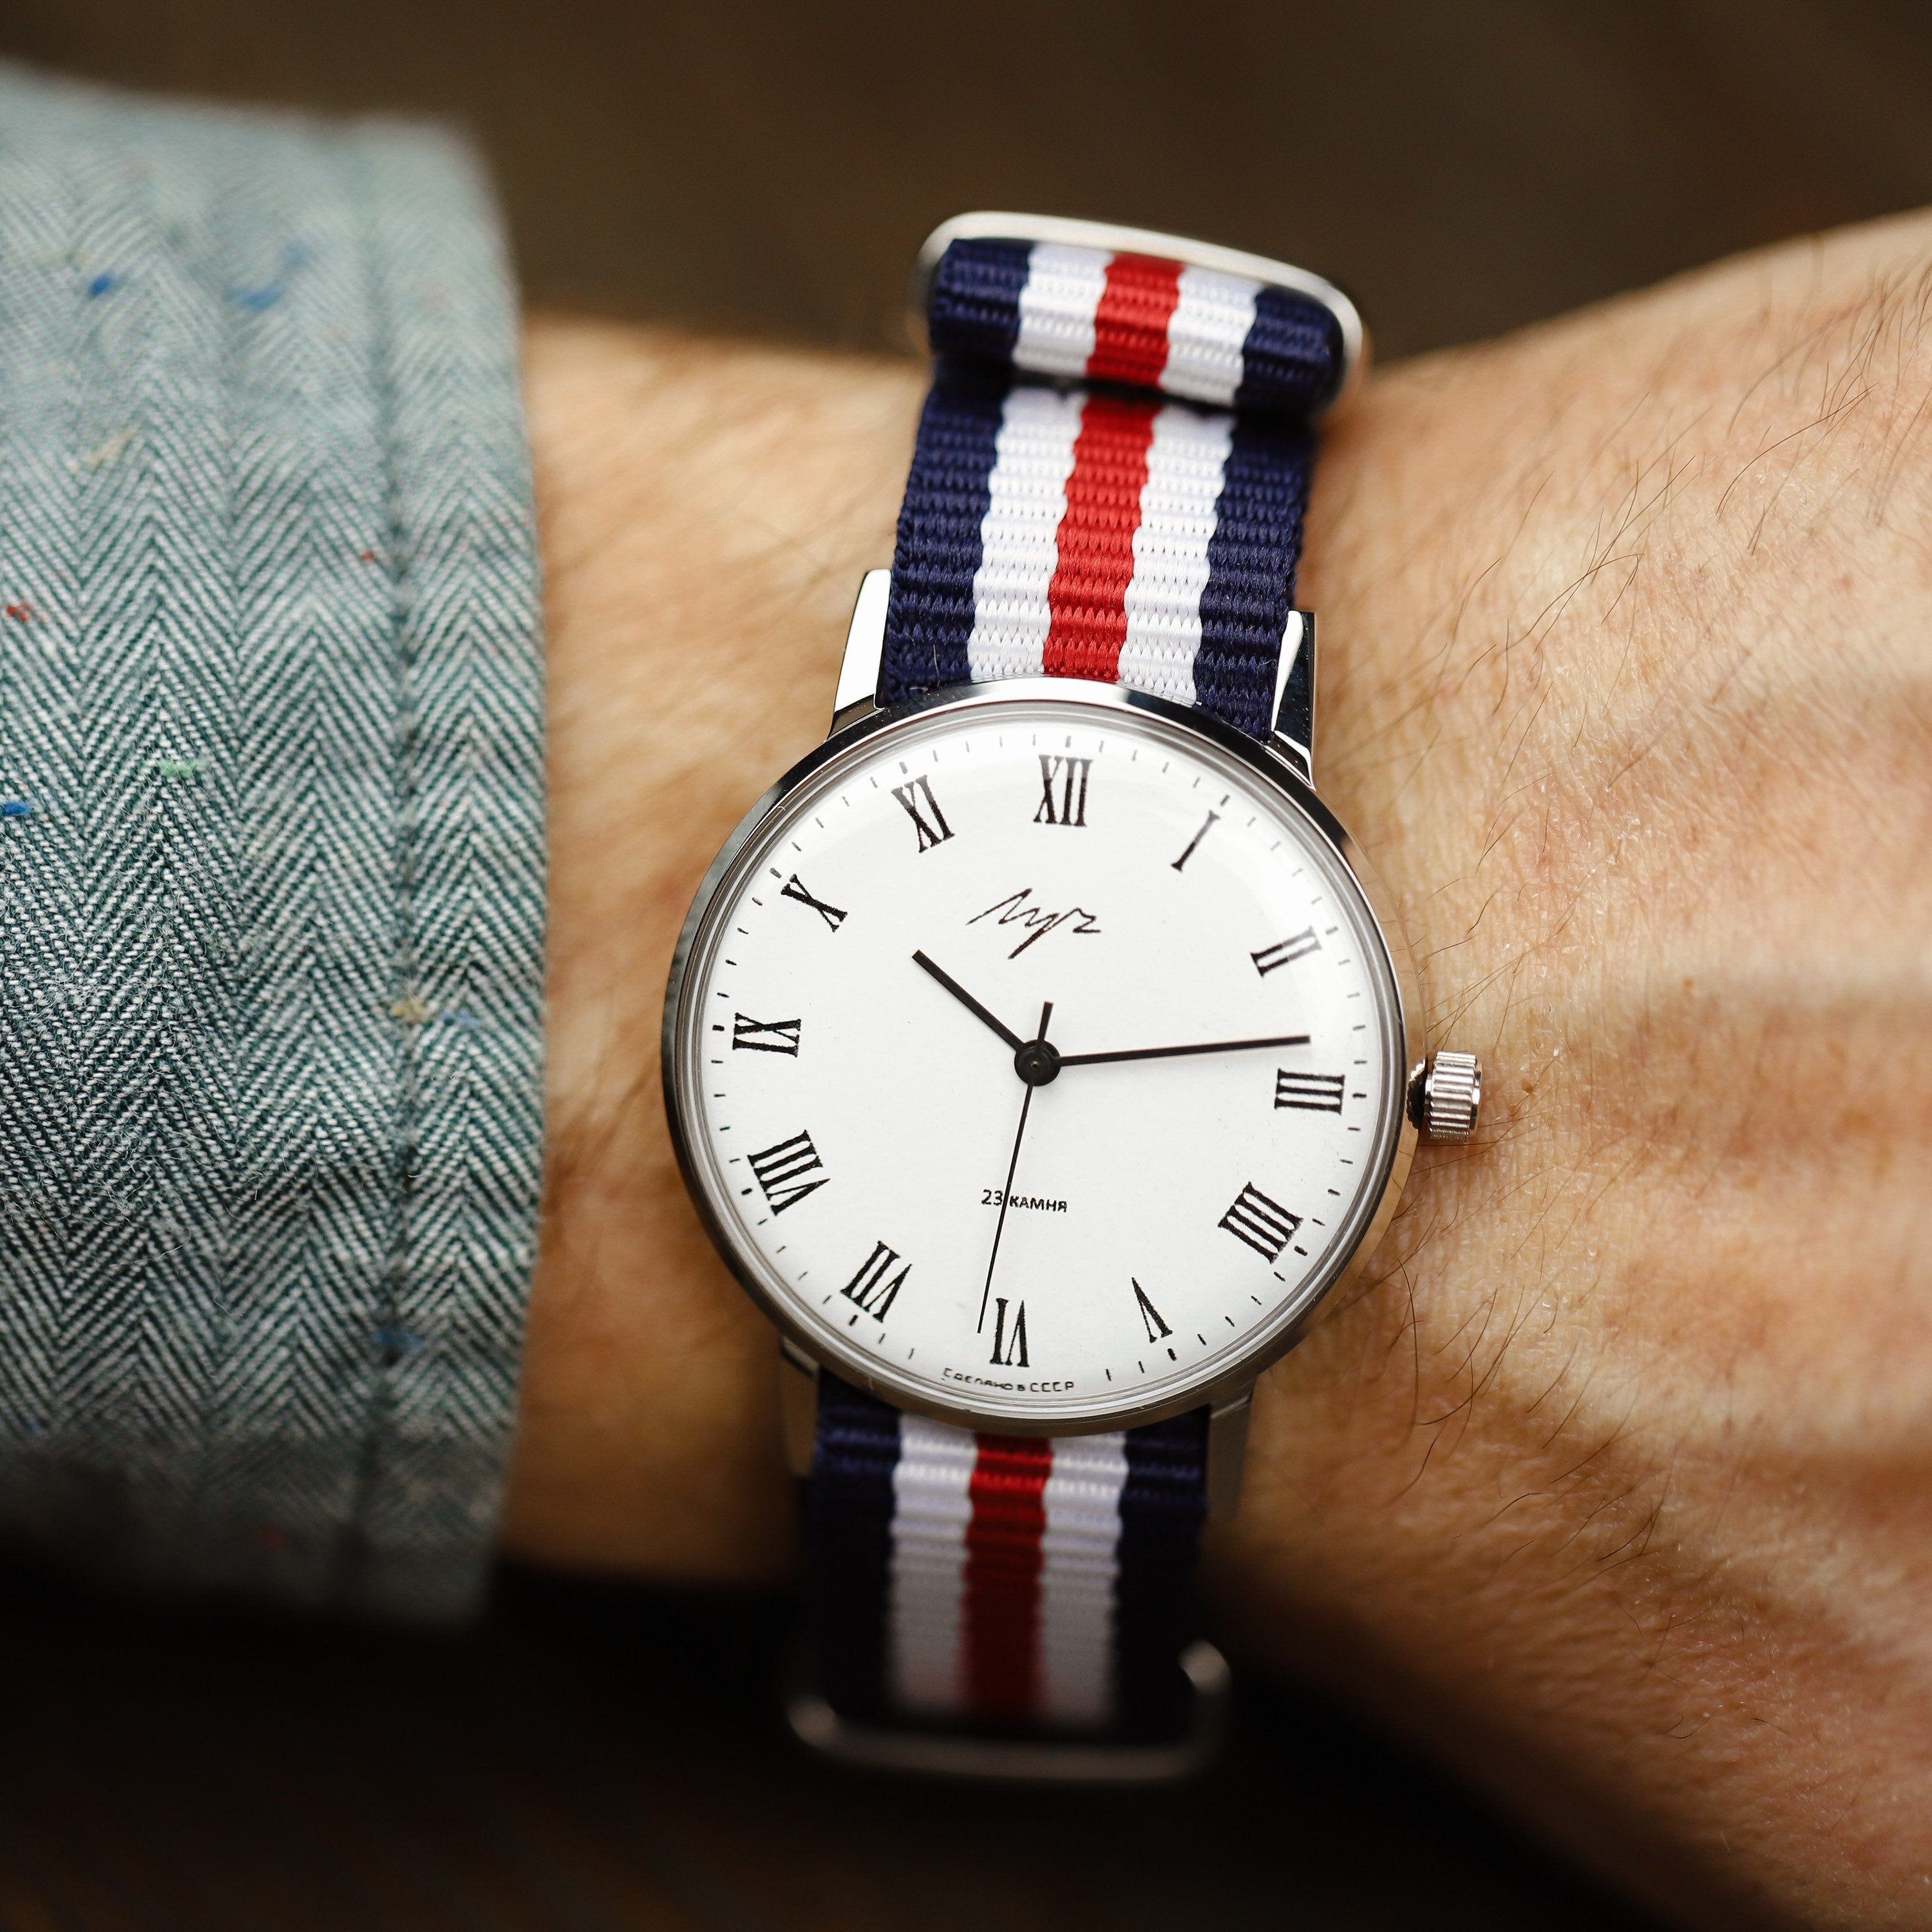 Vintage soviet watch LUCH. Gift watch, watches for men, mechanical watch, gift fir him, men watch, vintage watch, Nylon strap